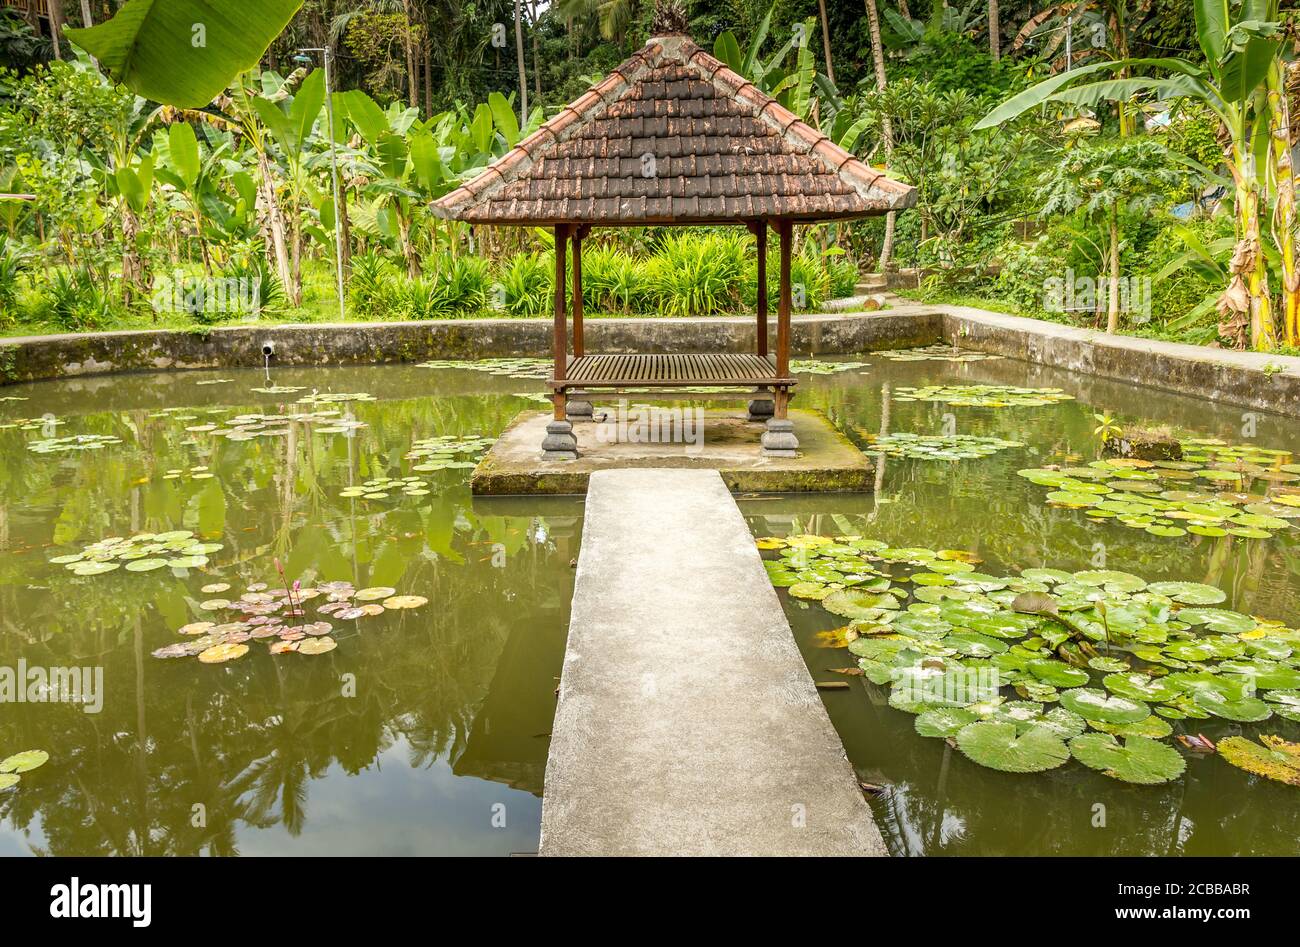 Garden in Pura Goa Gajah, Bali, Indonesia Stock Photo